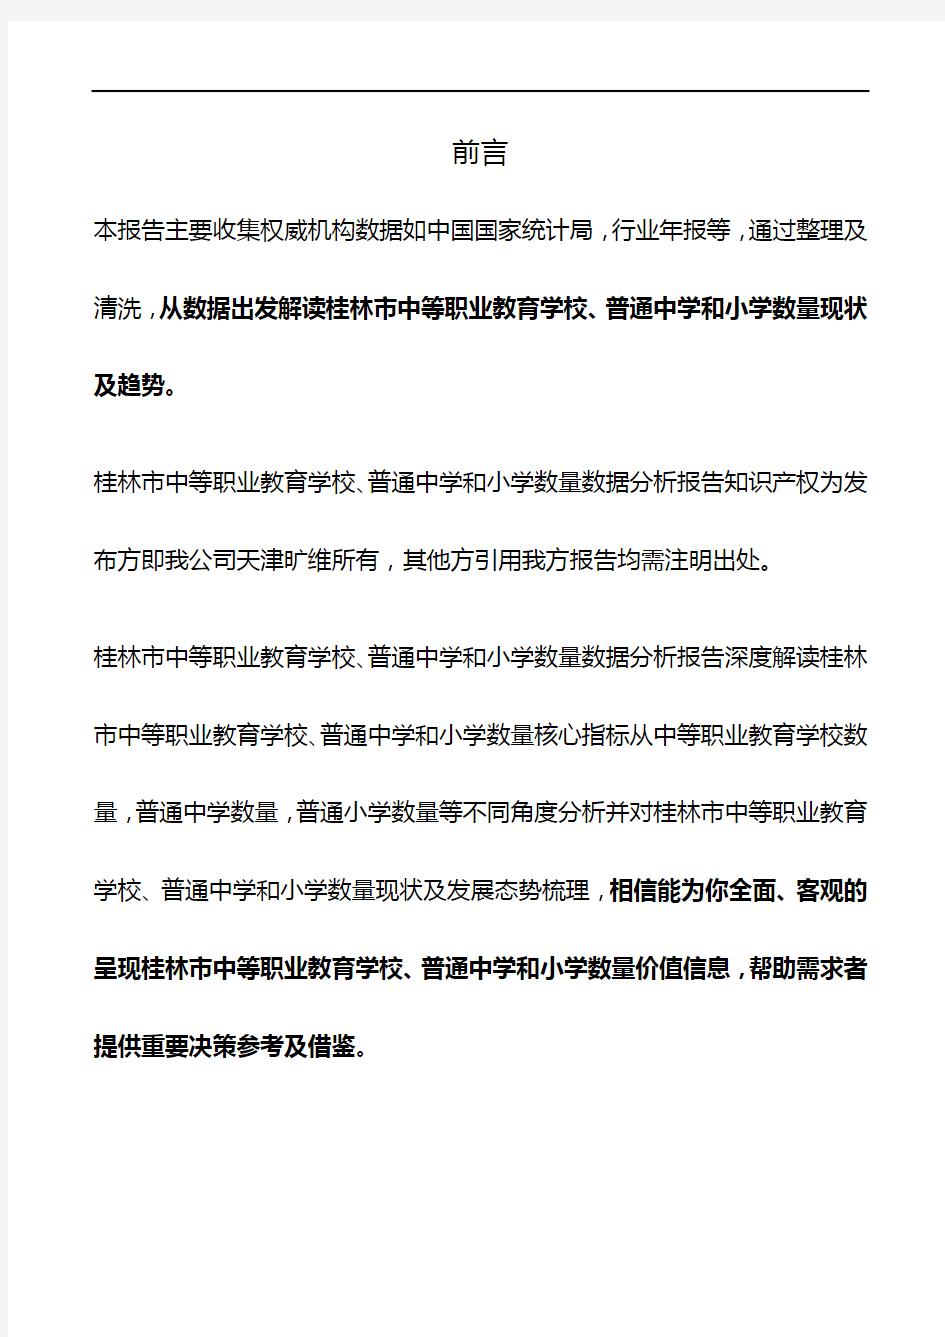 桂林市(市辖区)中等职业教育学校、普通中学和小学数量3年数据分析报告2019版